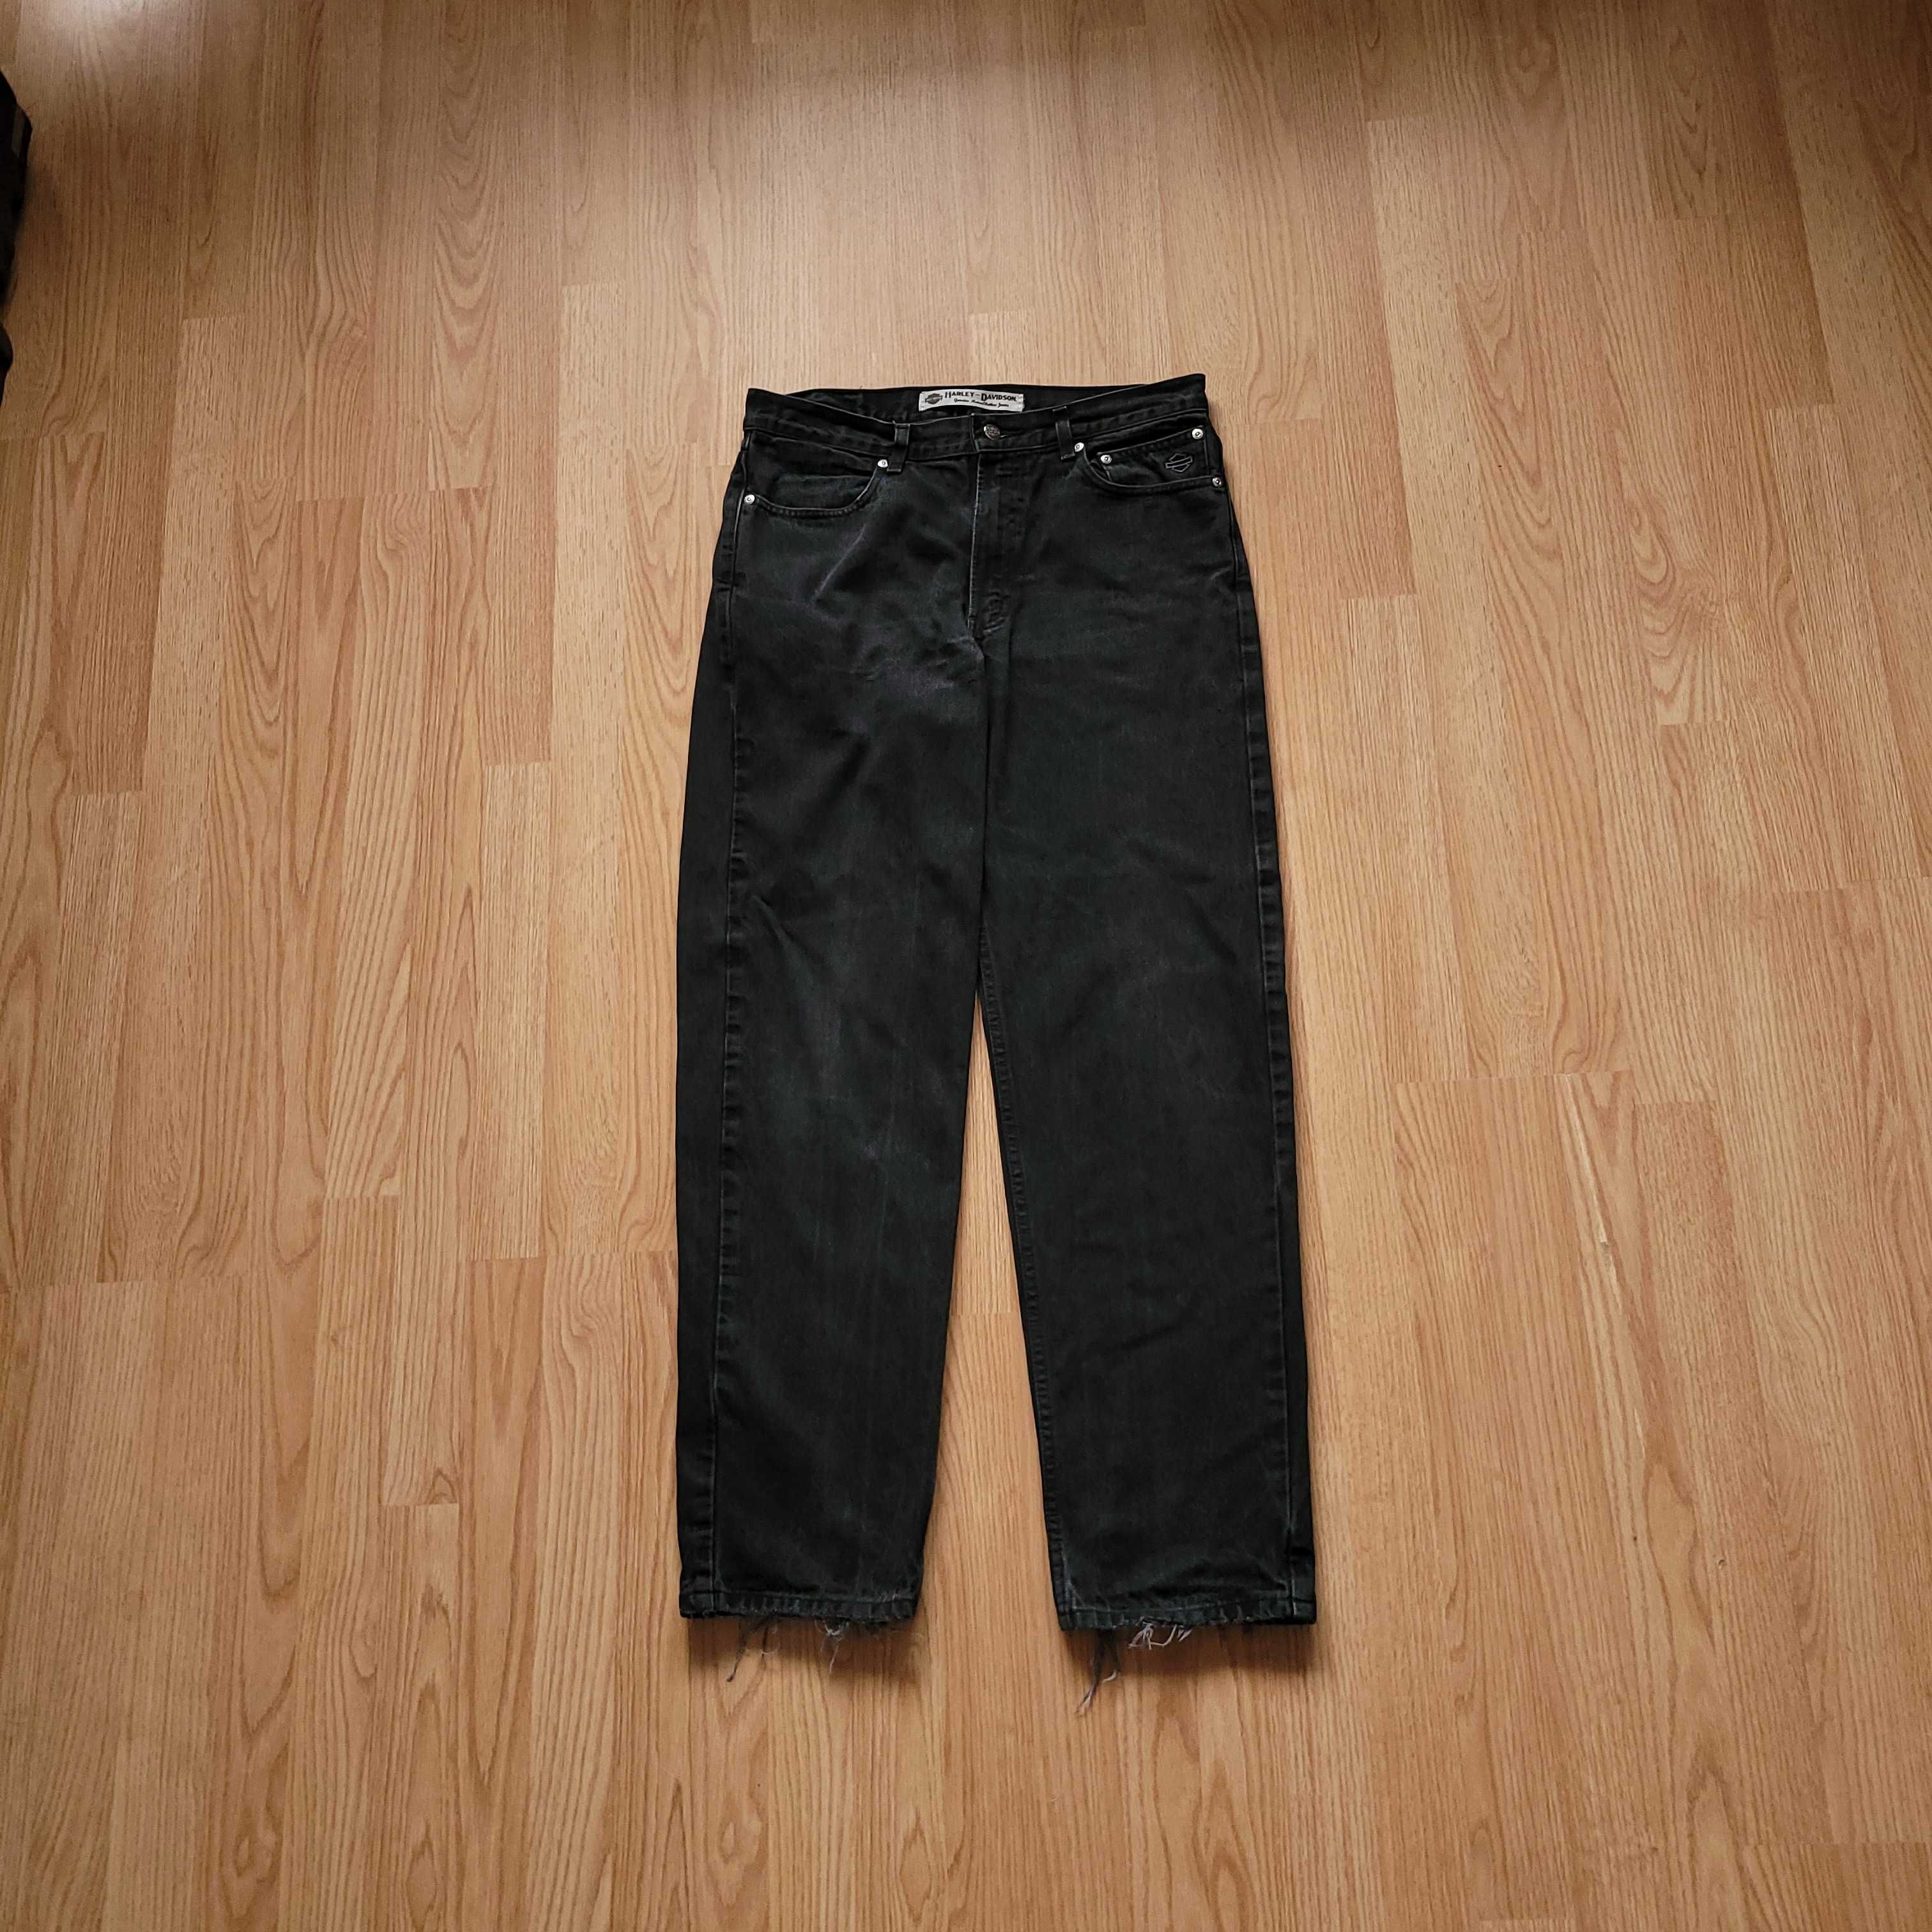 Spodnie jeansowe Harley Davidson 34/32us black washed